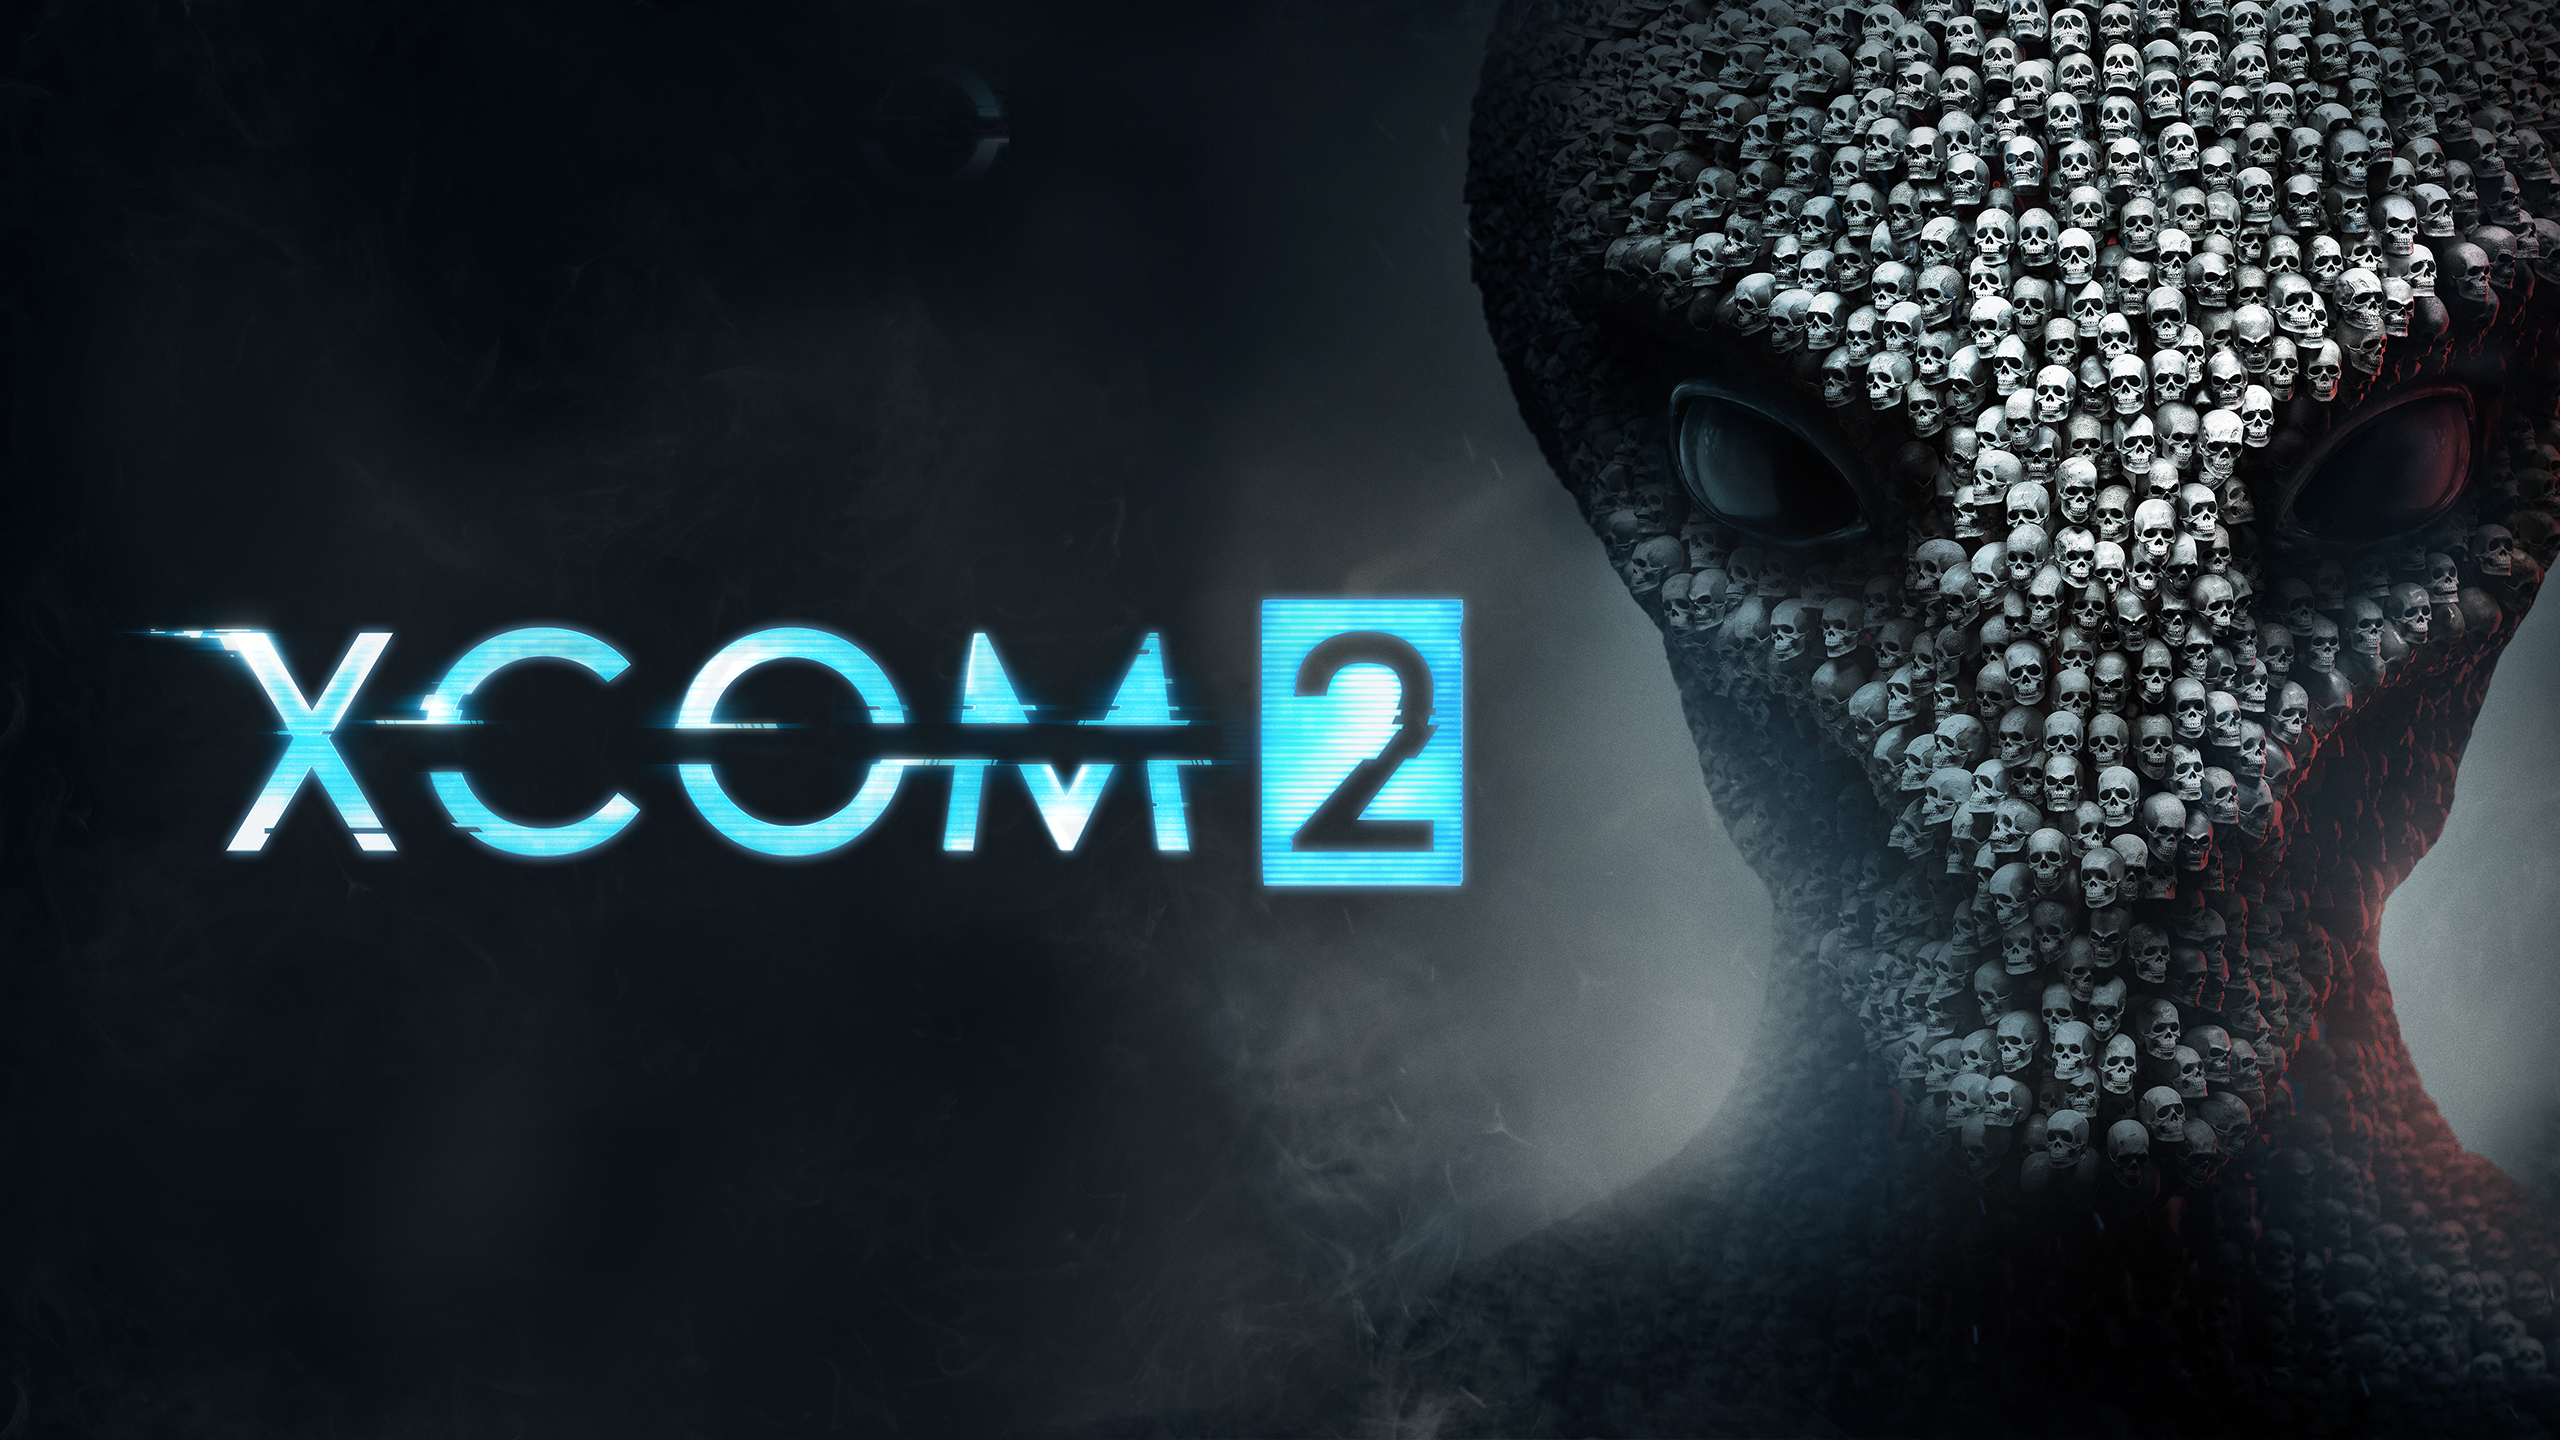 XCOM 2 - Official Trailer